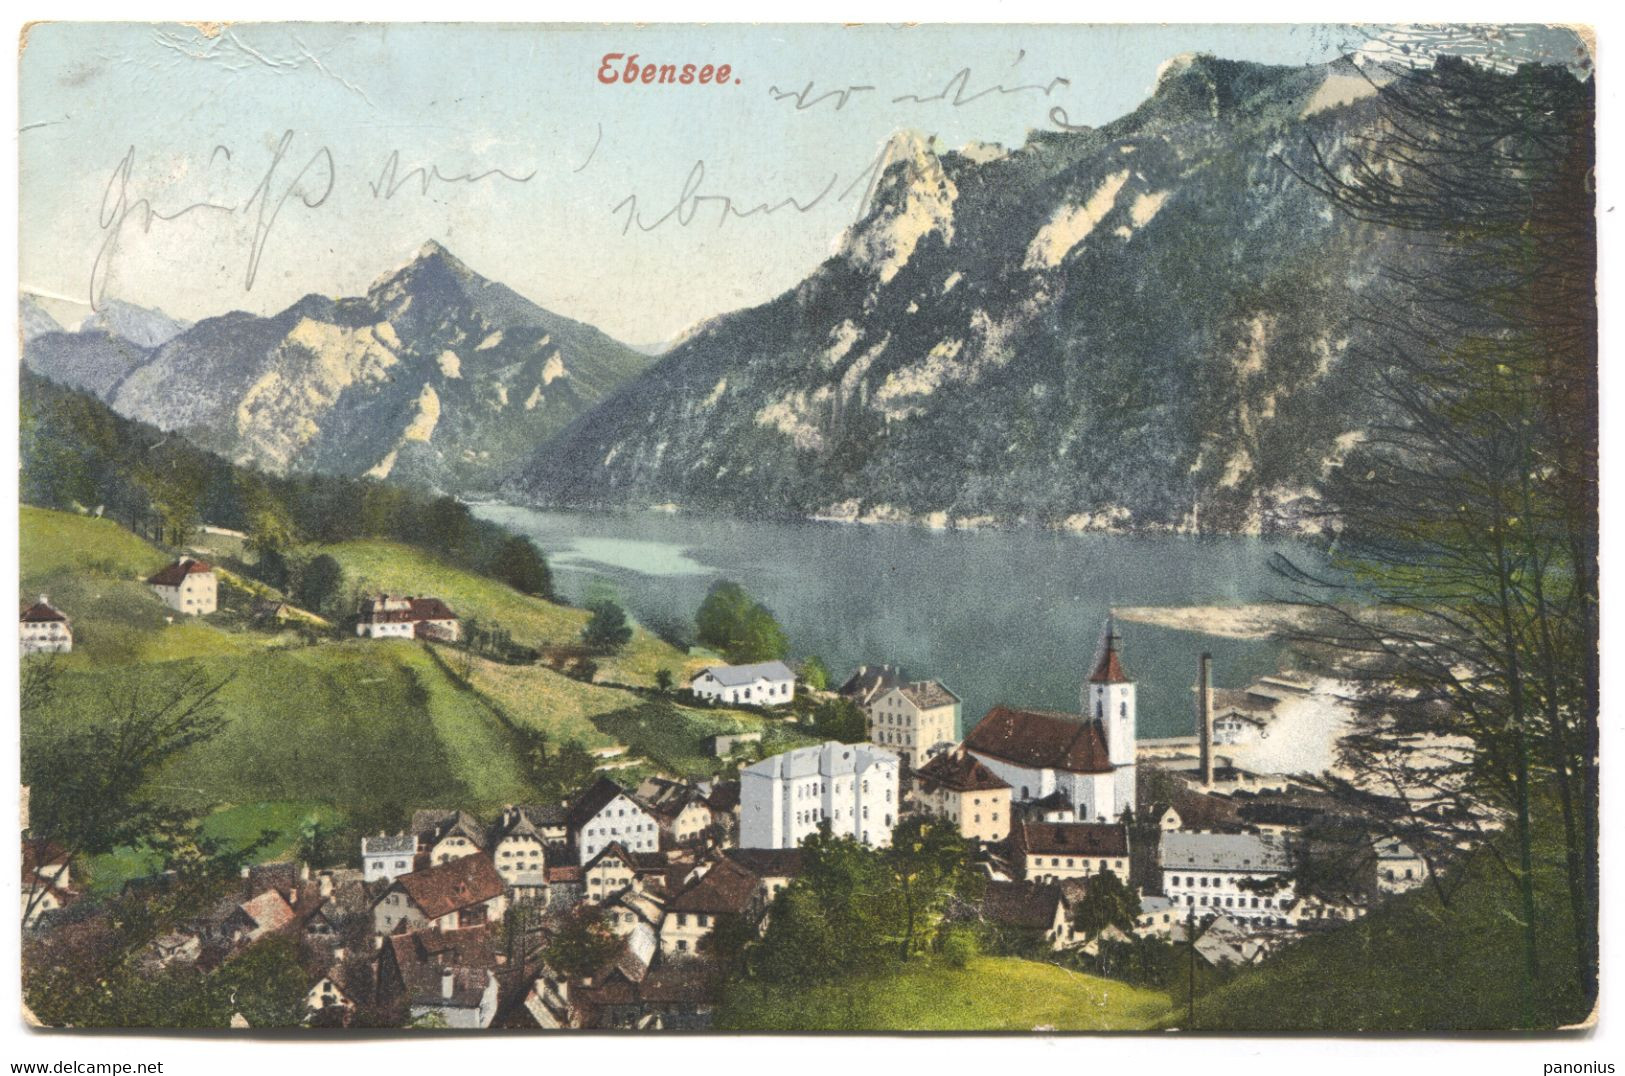 EBENSEE - AUSTRIA, Year 1907 - Ebensee